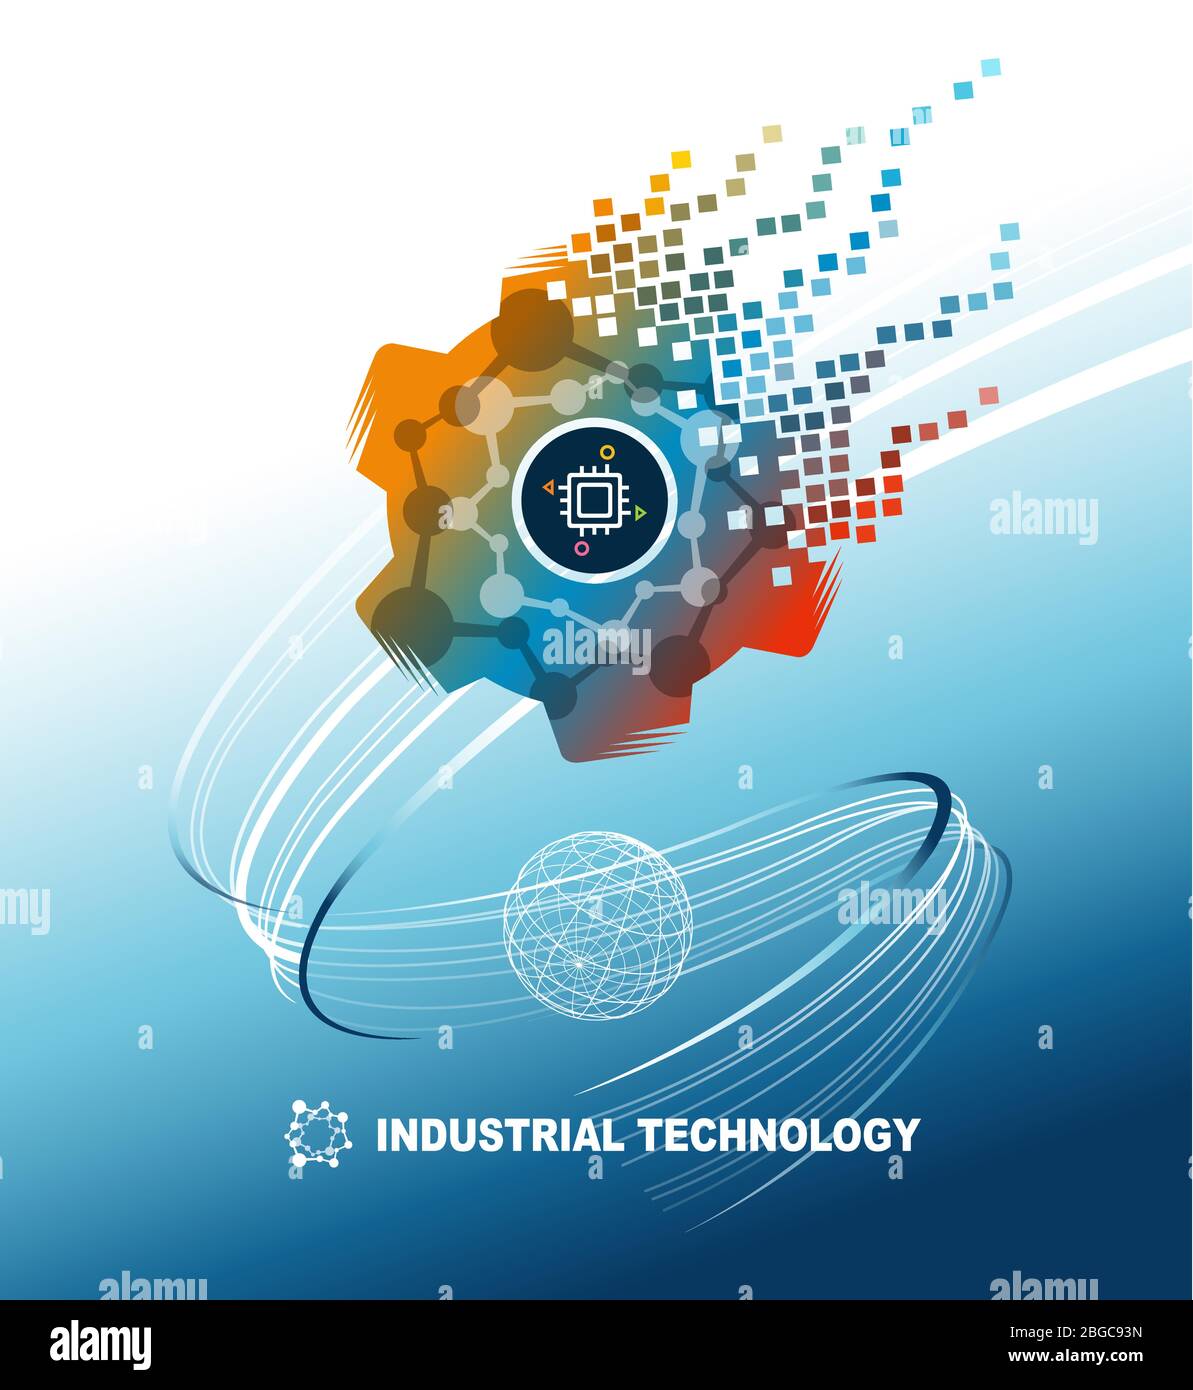 La tecnologia industriale mondiale si è sviluppata verso il futuro. Illustrazione vettoriale del gradiente di sfondo blu Illustrazione Vettoriale